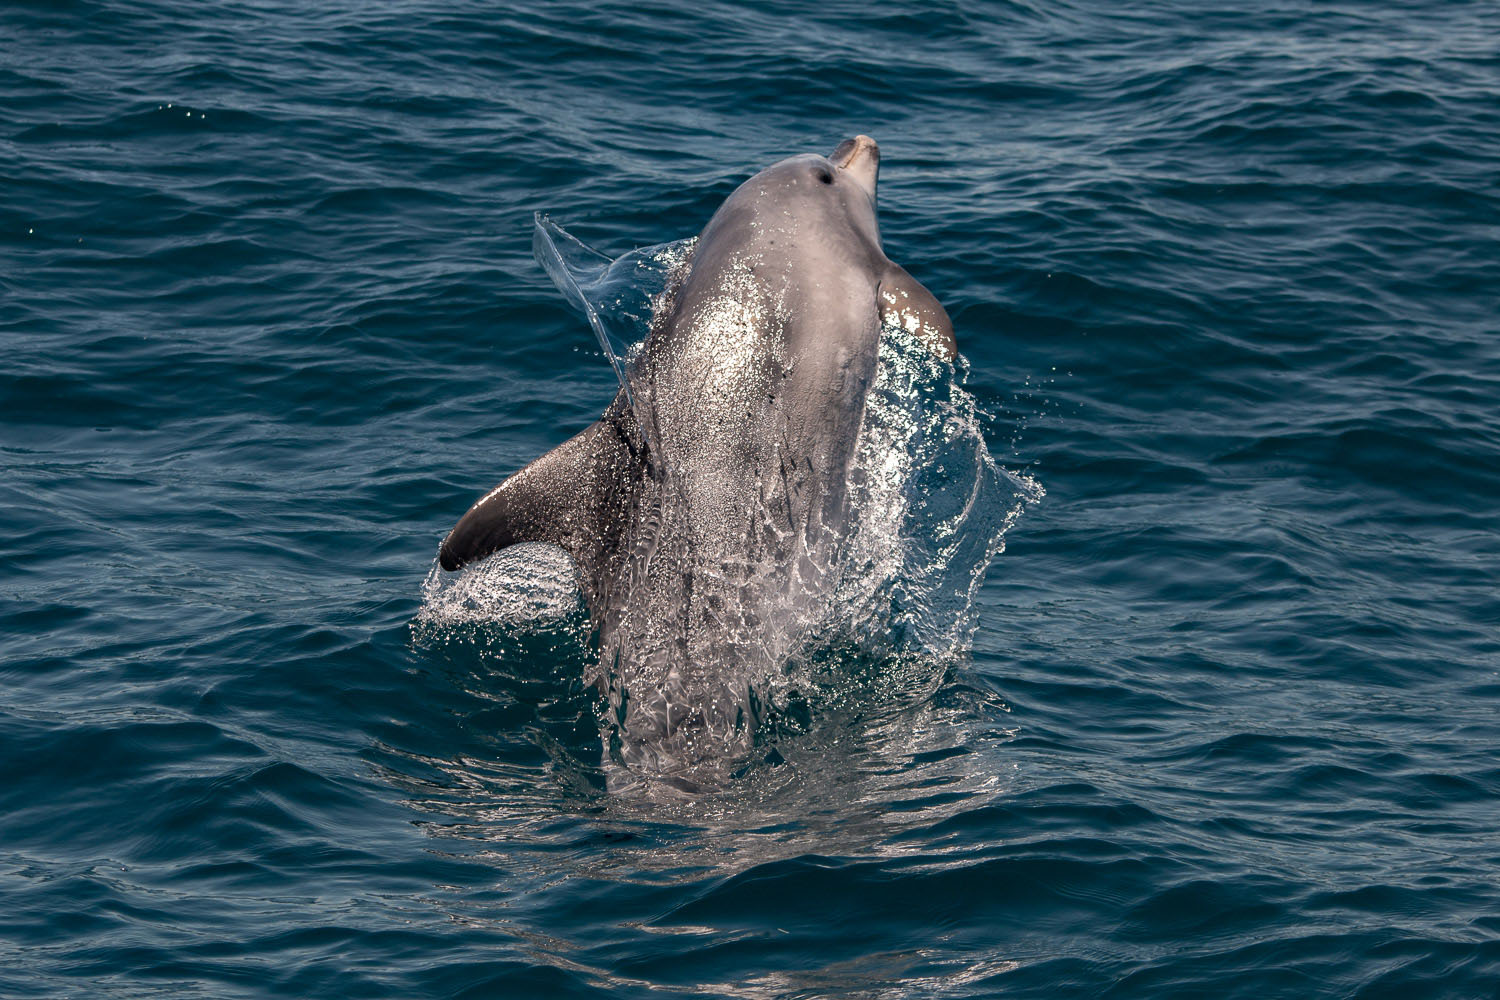 voyage scientifique - cetaces de mediterranee vers la corse a la voile 34